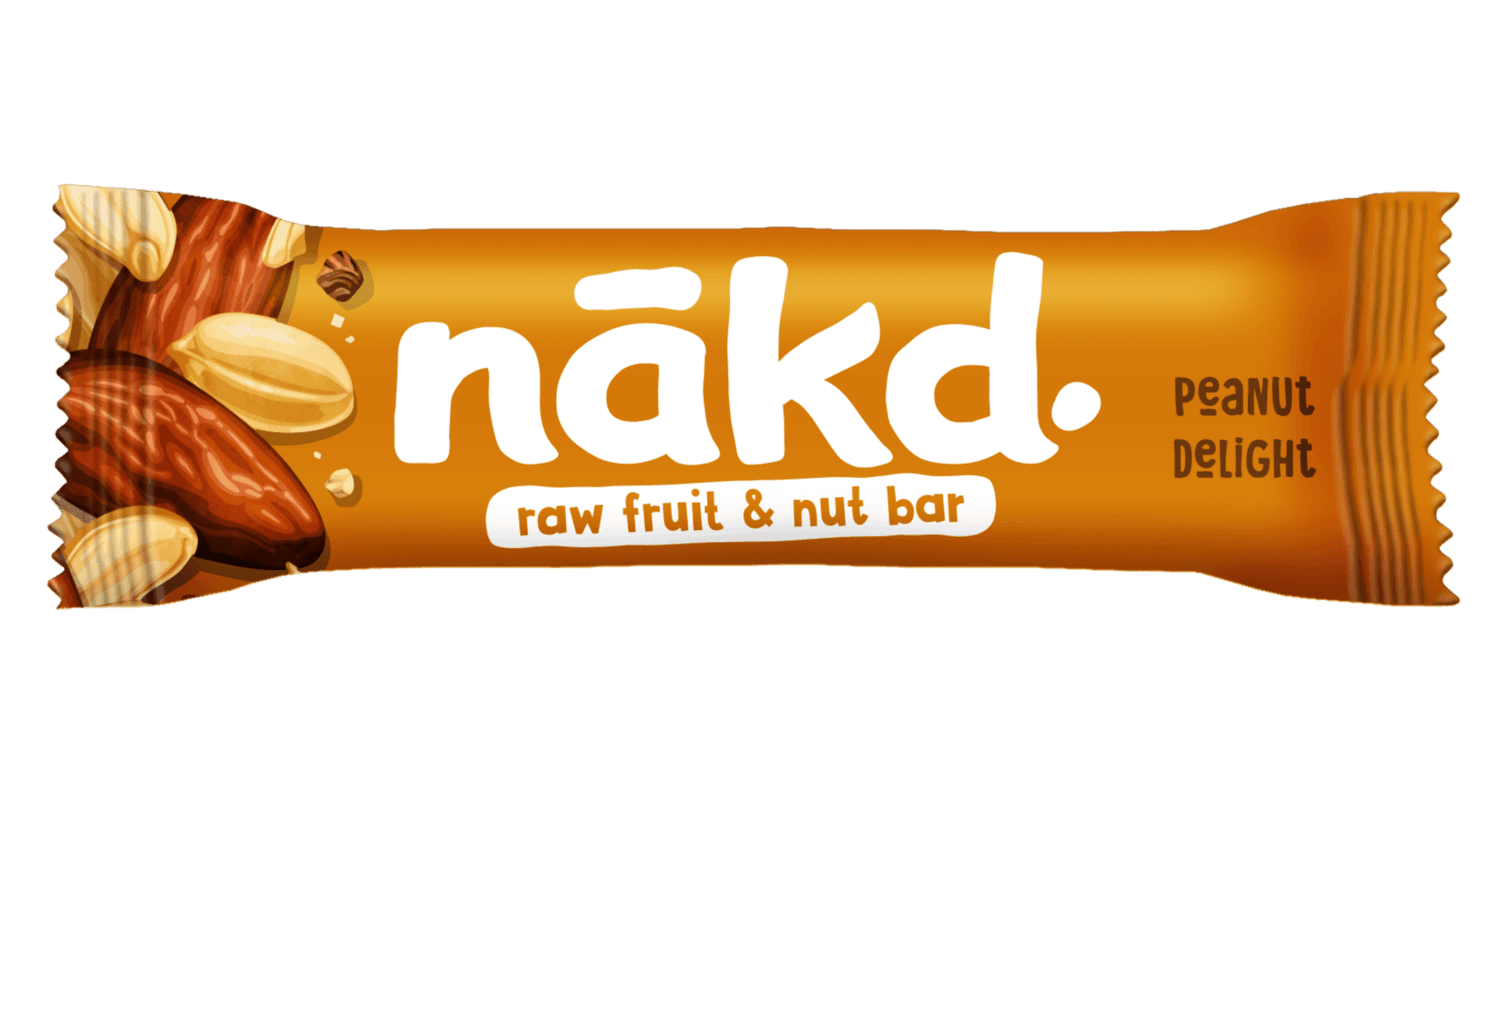 Nakd Peanut delight 35 g  expirace